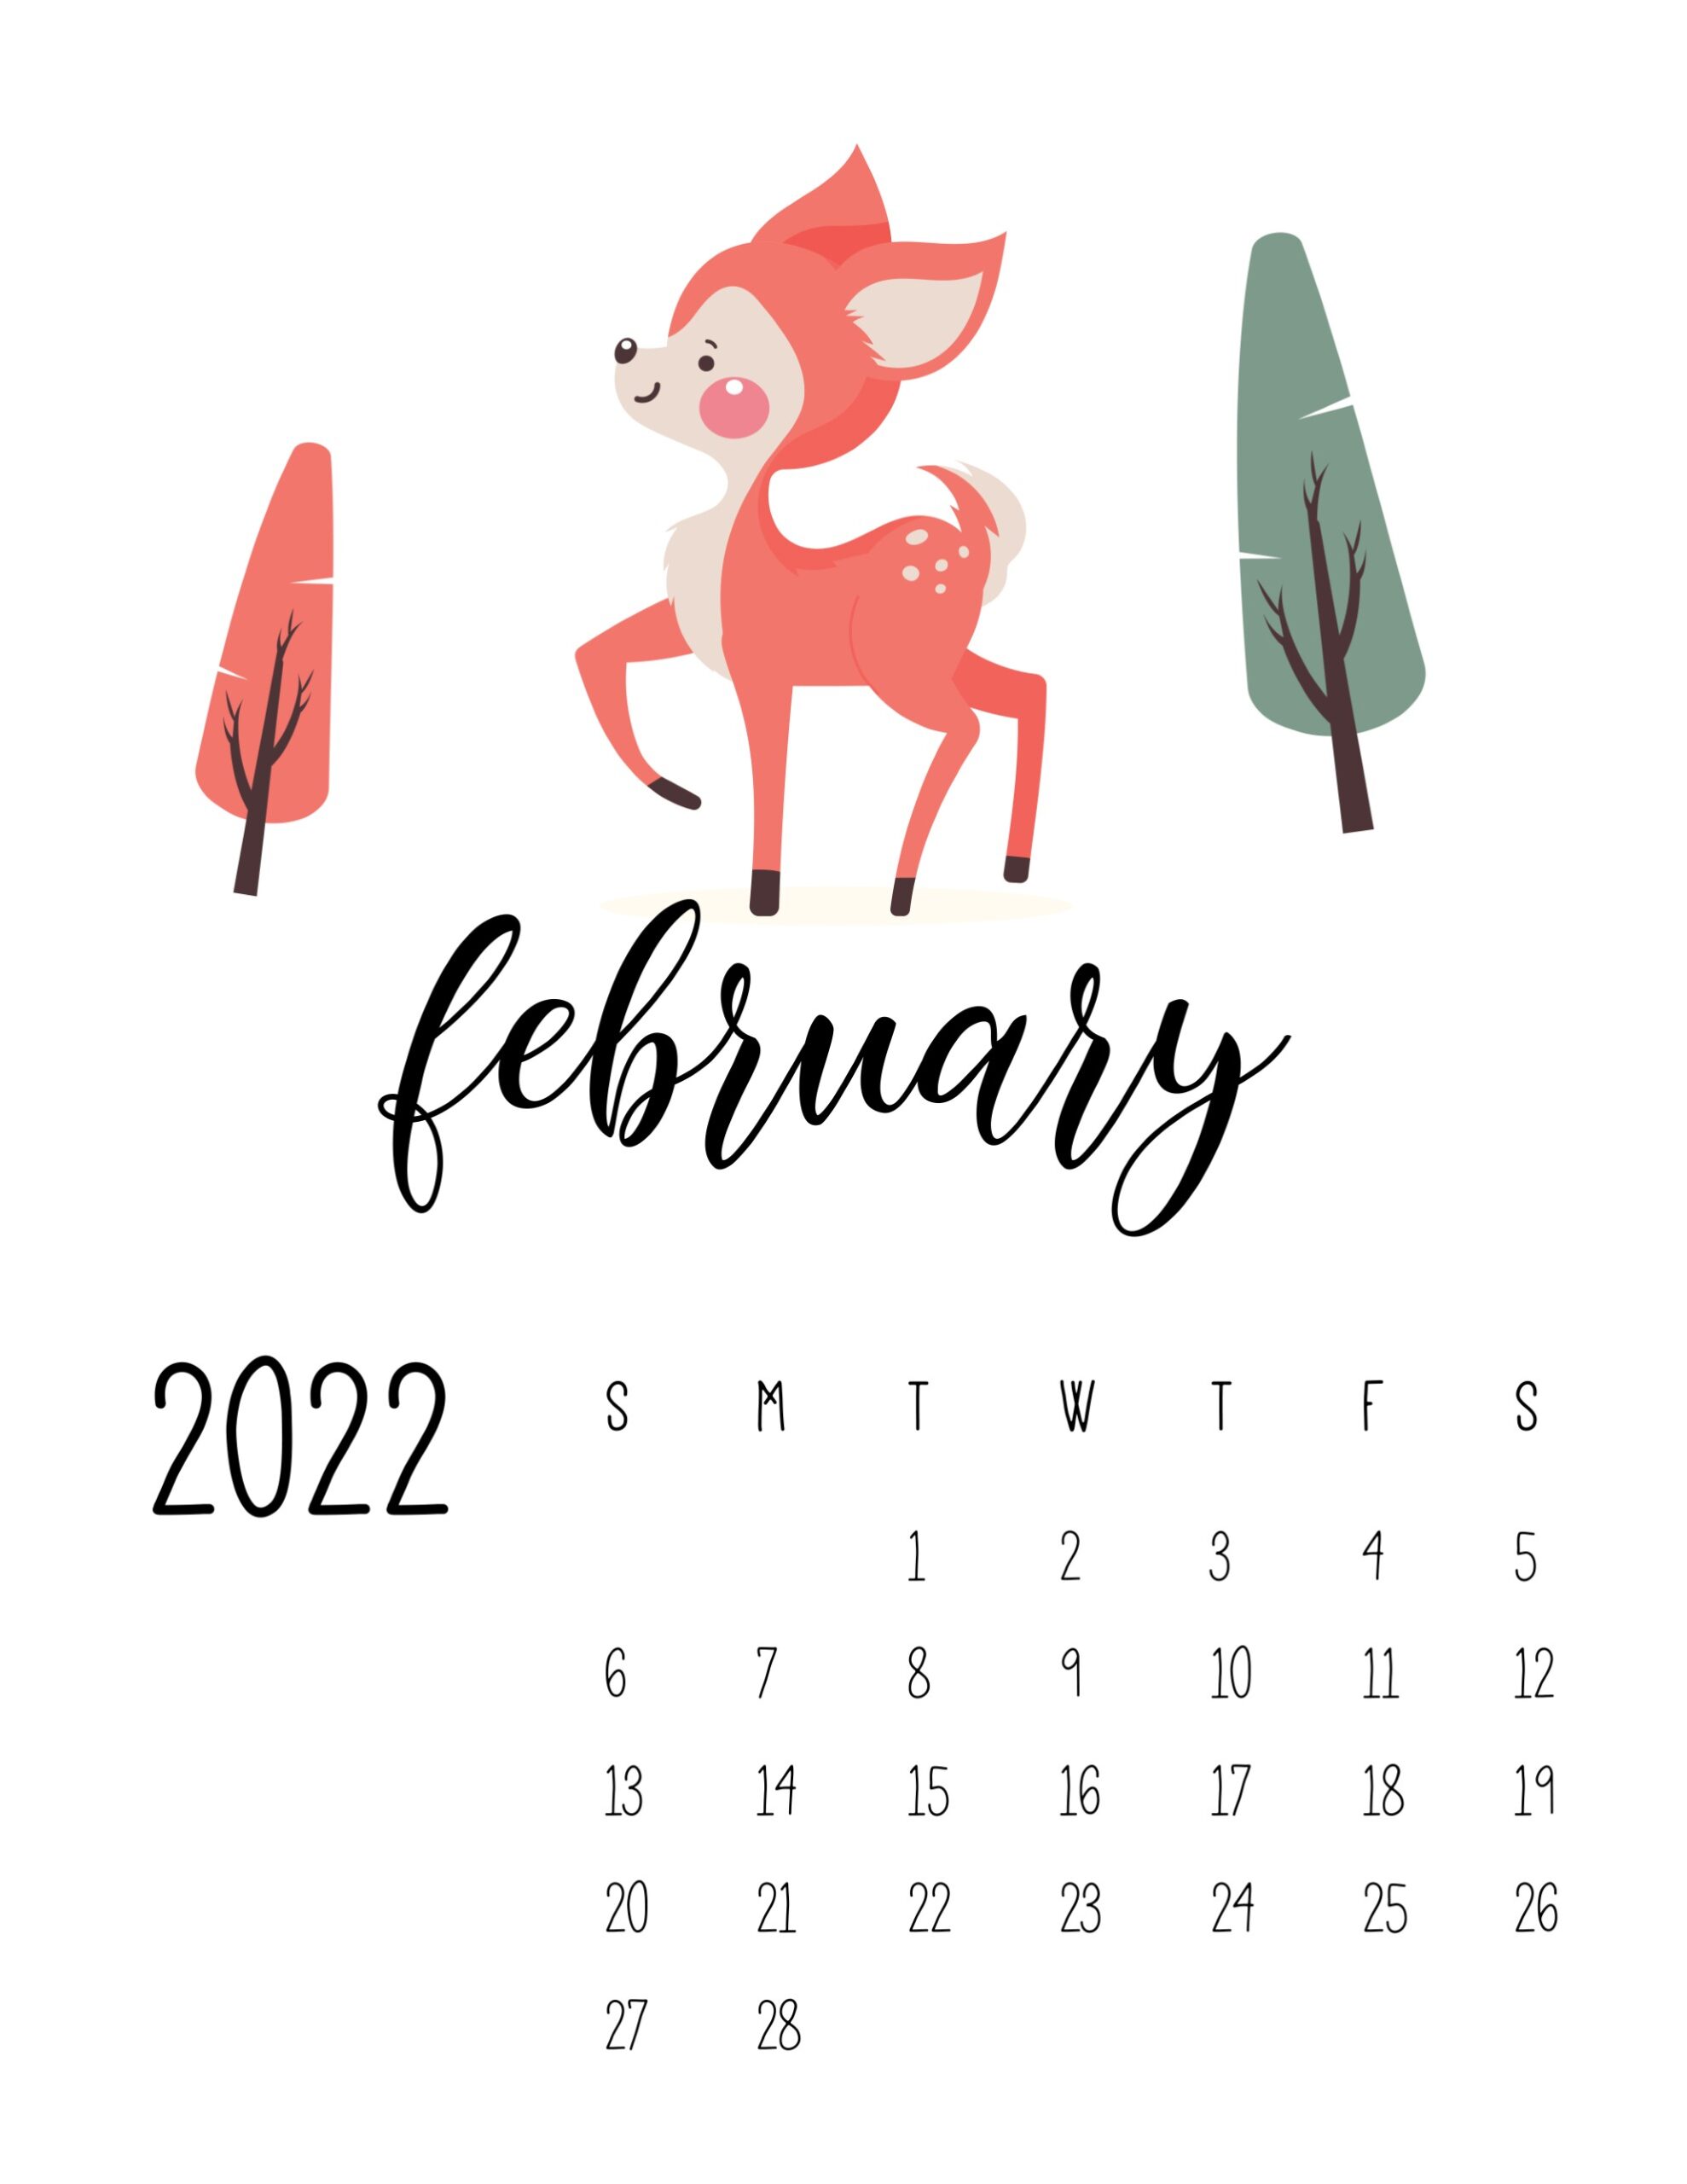 calendario 2022 vida selvagem fevereiro